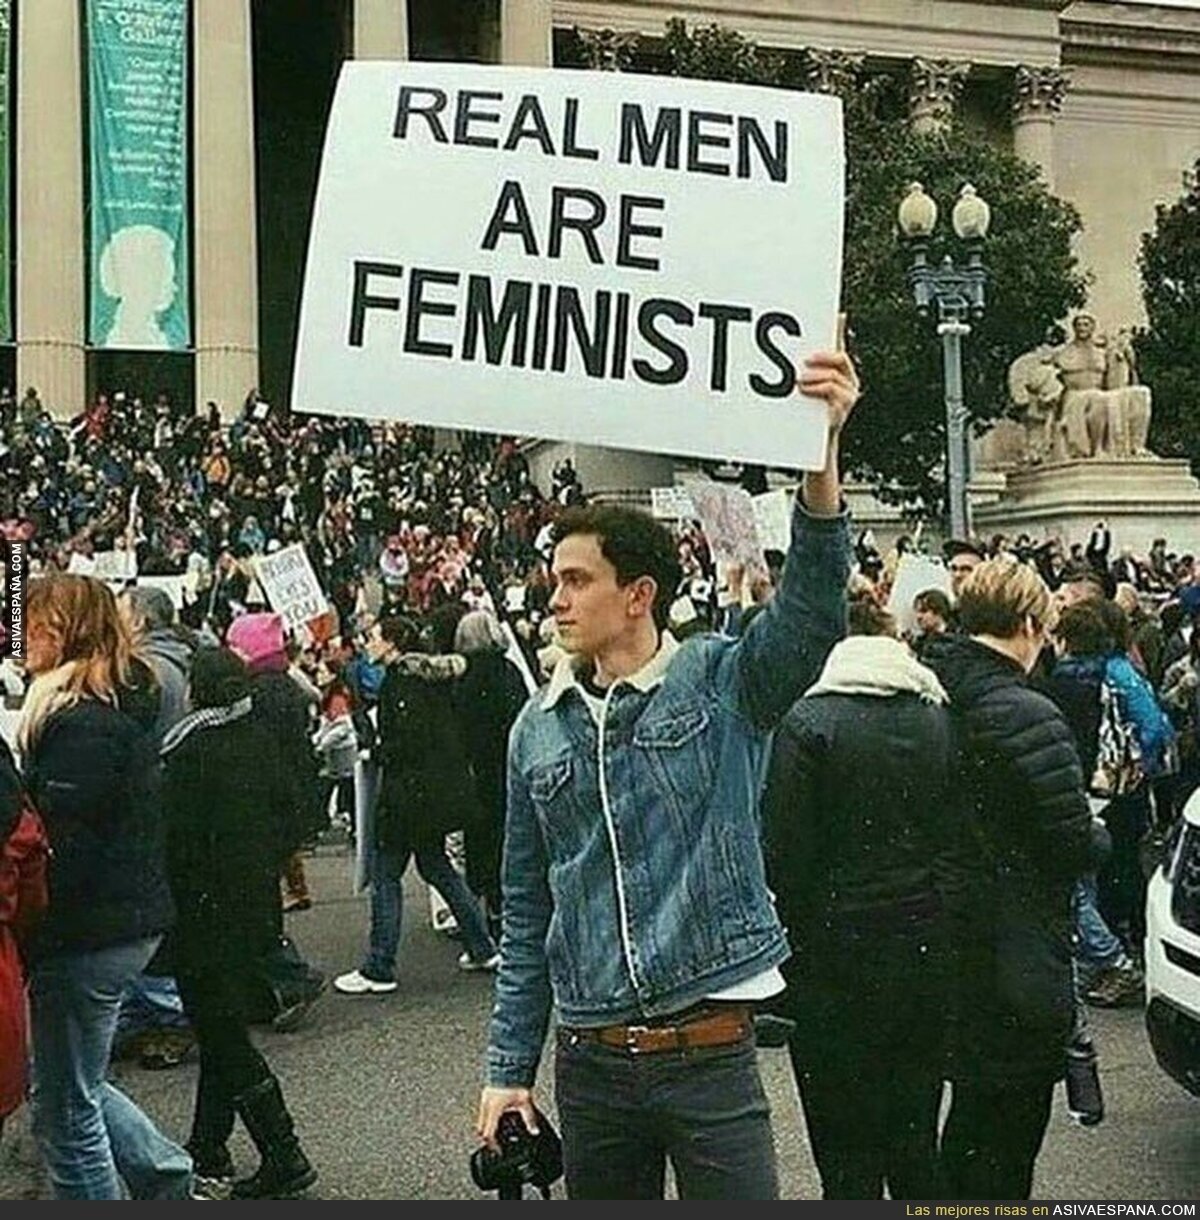 Los hombres de verdad son feministas